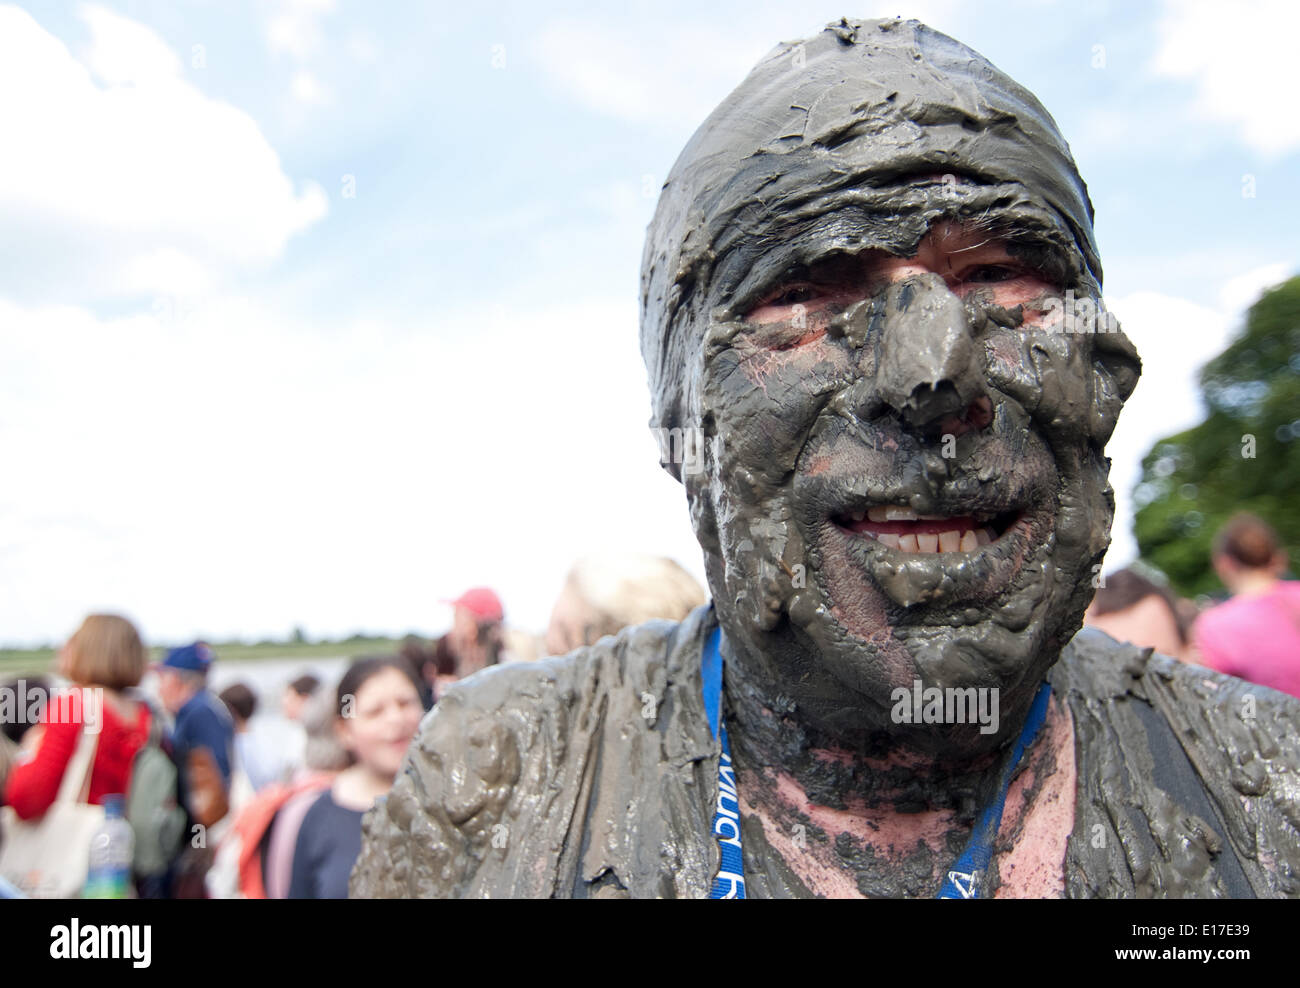 Maldon, UK. 25th May, 2014. A muddy face competitor at the 2014 Maldon Mud Race. Credit:  Tony Worpole/Alamy Live News Stock Photo